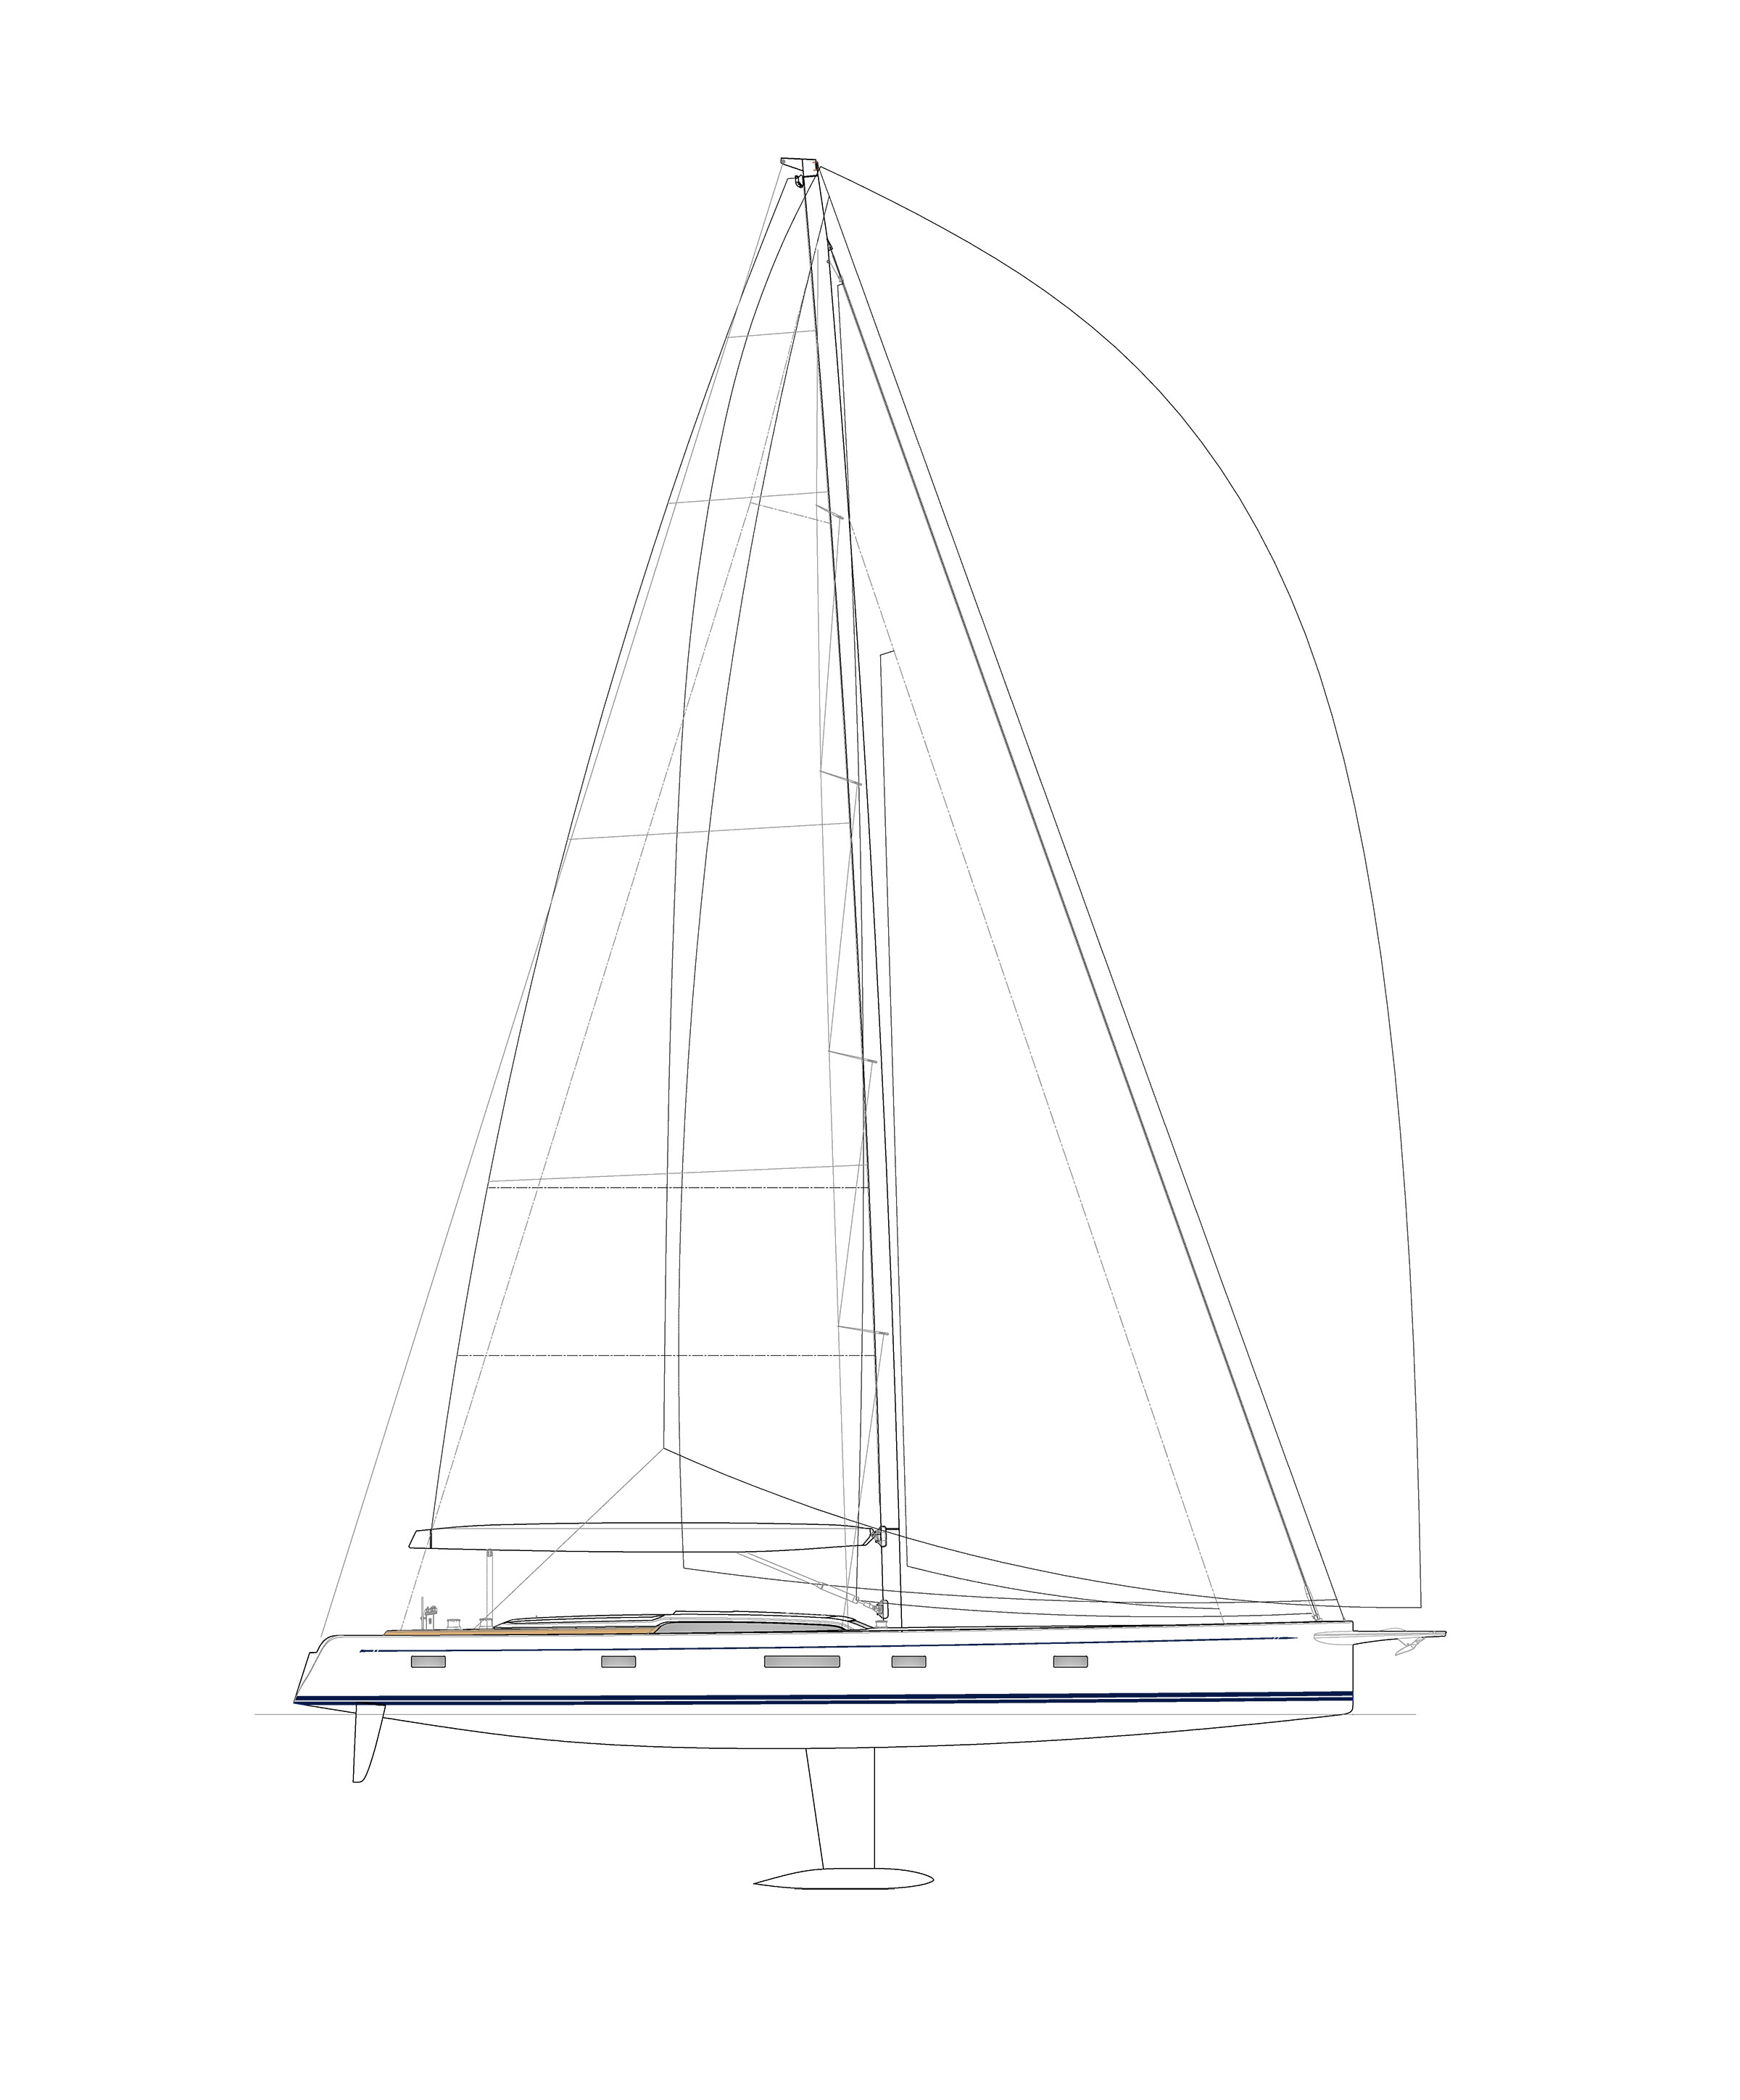 100 ft sailing yachts